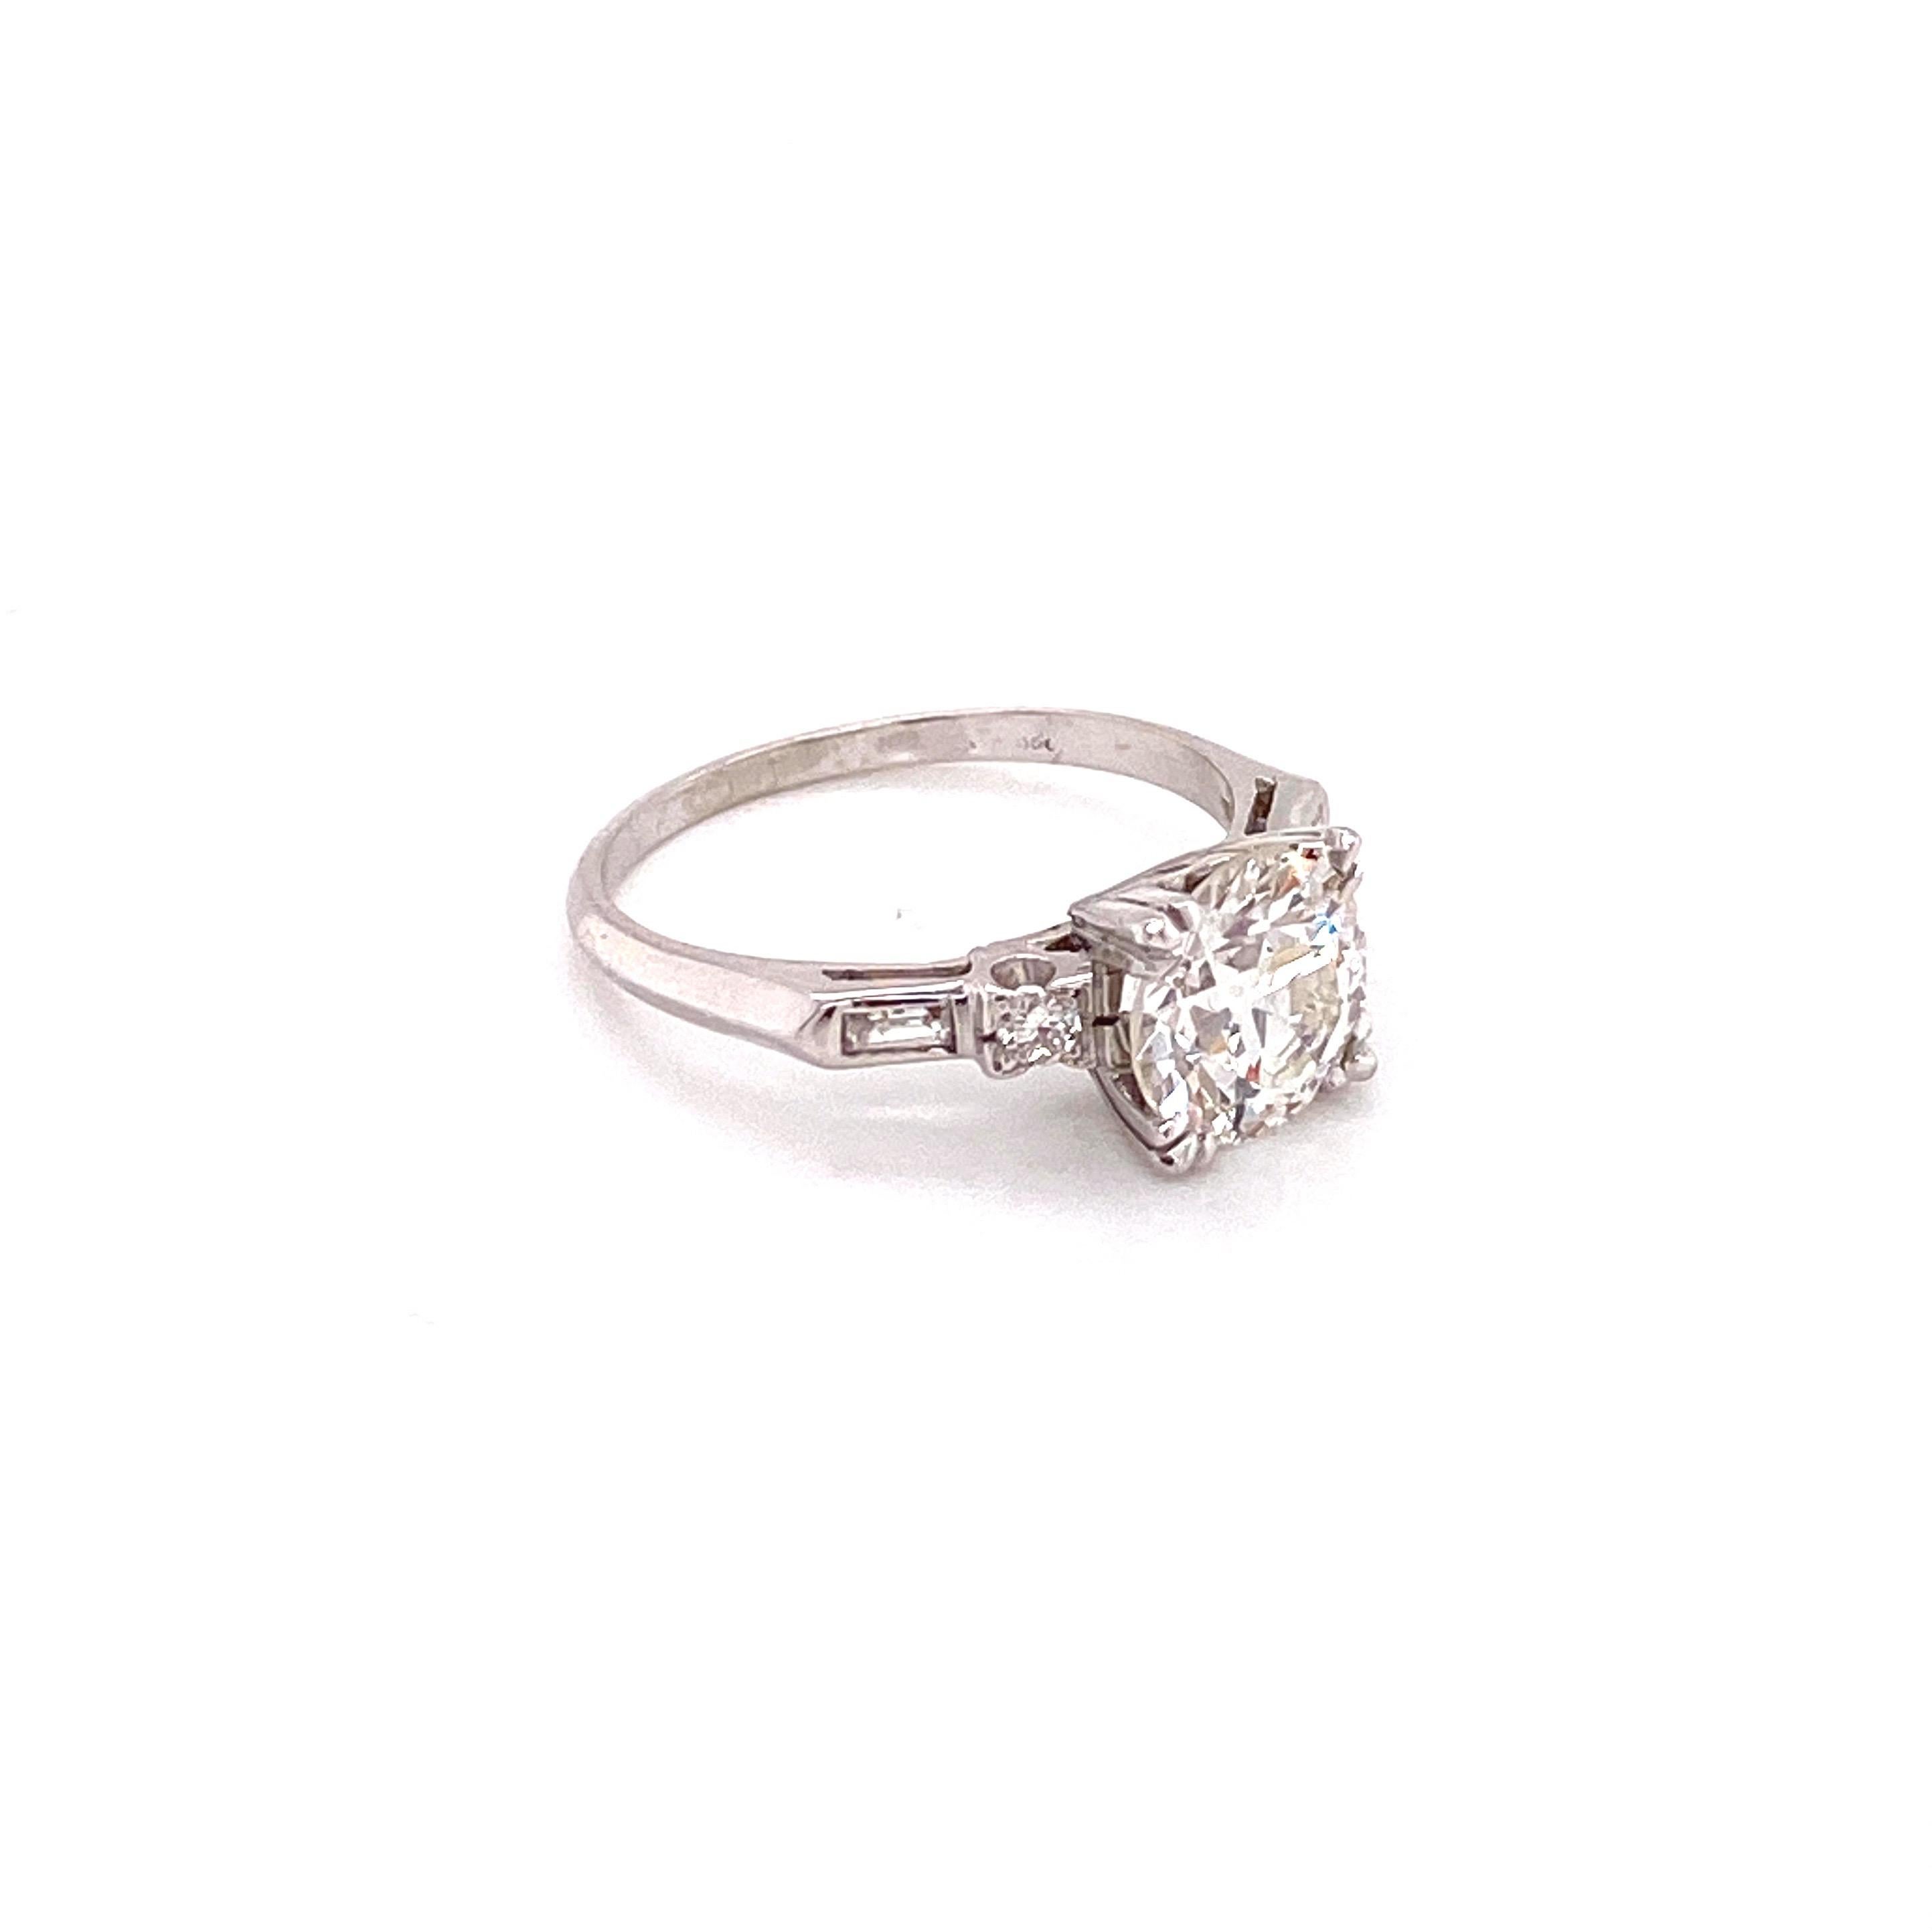 Dieser atemberaubende Vintage-Verlobungsring aus den 1950er Jahren ist der Inbegriff eines Schmuckstücks aus einer berühmten Ära. Im Mittelpunkt steht ein prächtiger Diamant im europäischen Schliff von 1,90 Karat, der mit seiner warmen Antik-I-Farbe